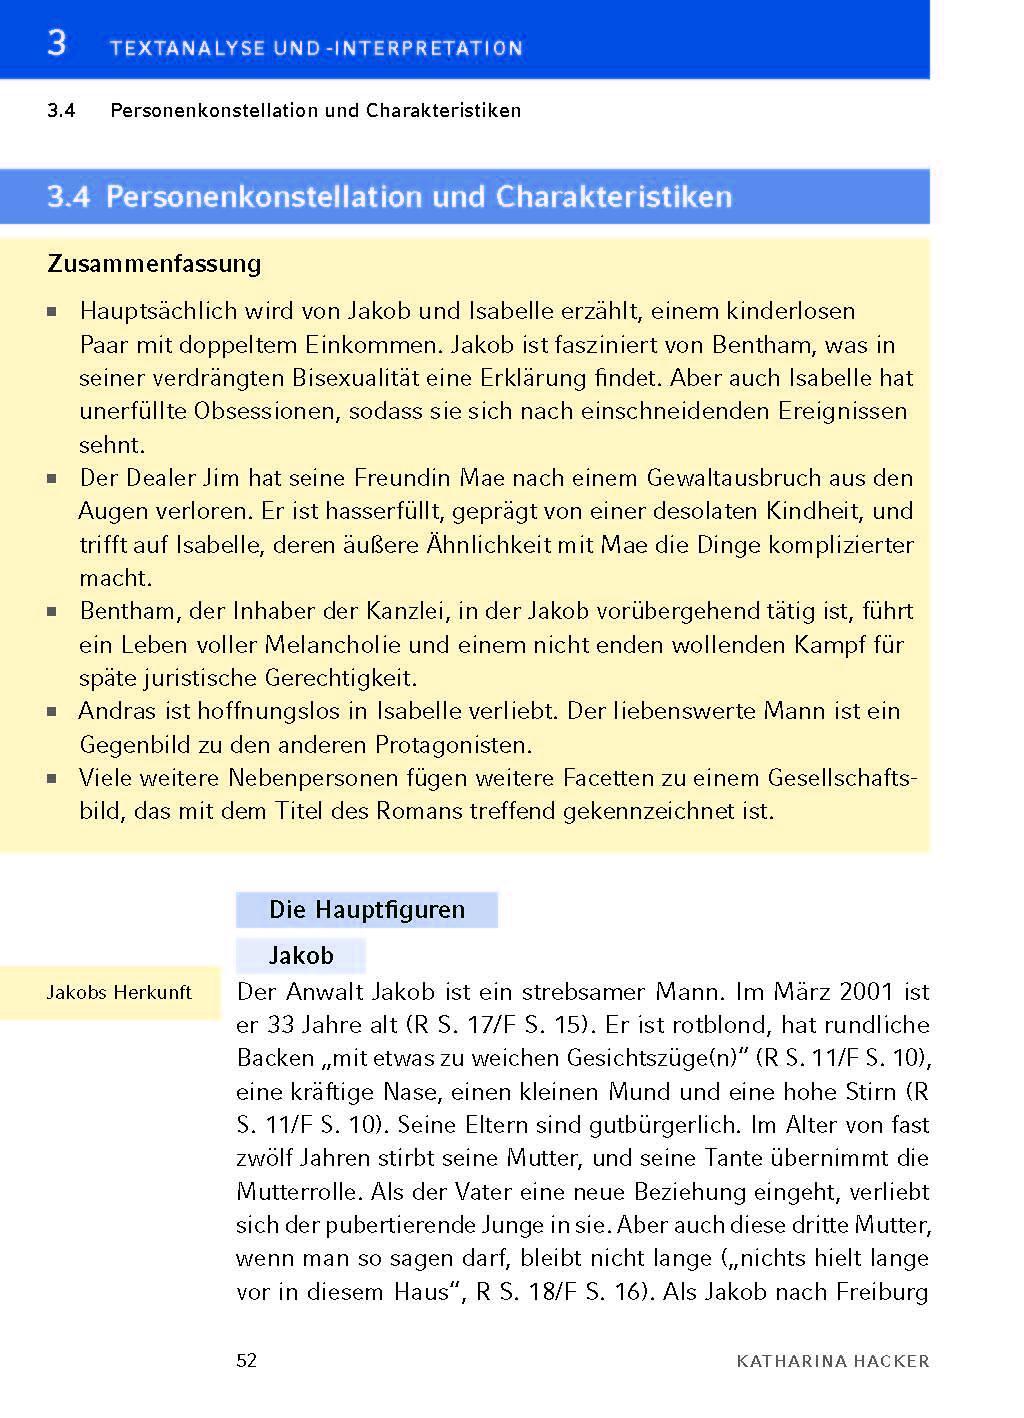 Bild: 9783804420649 | Die Habenichtse - Textanalyse und Interpretation | Katharina Hacker